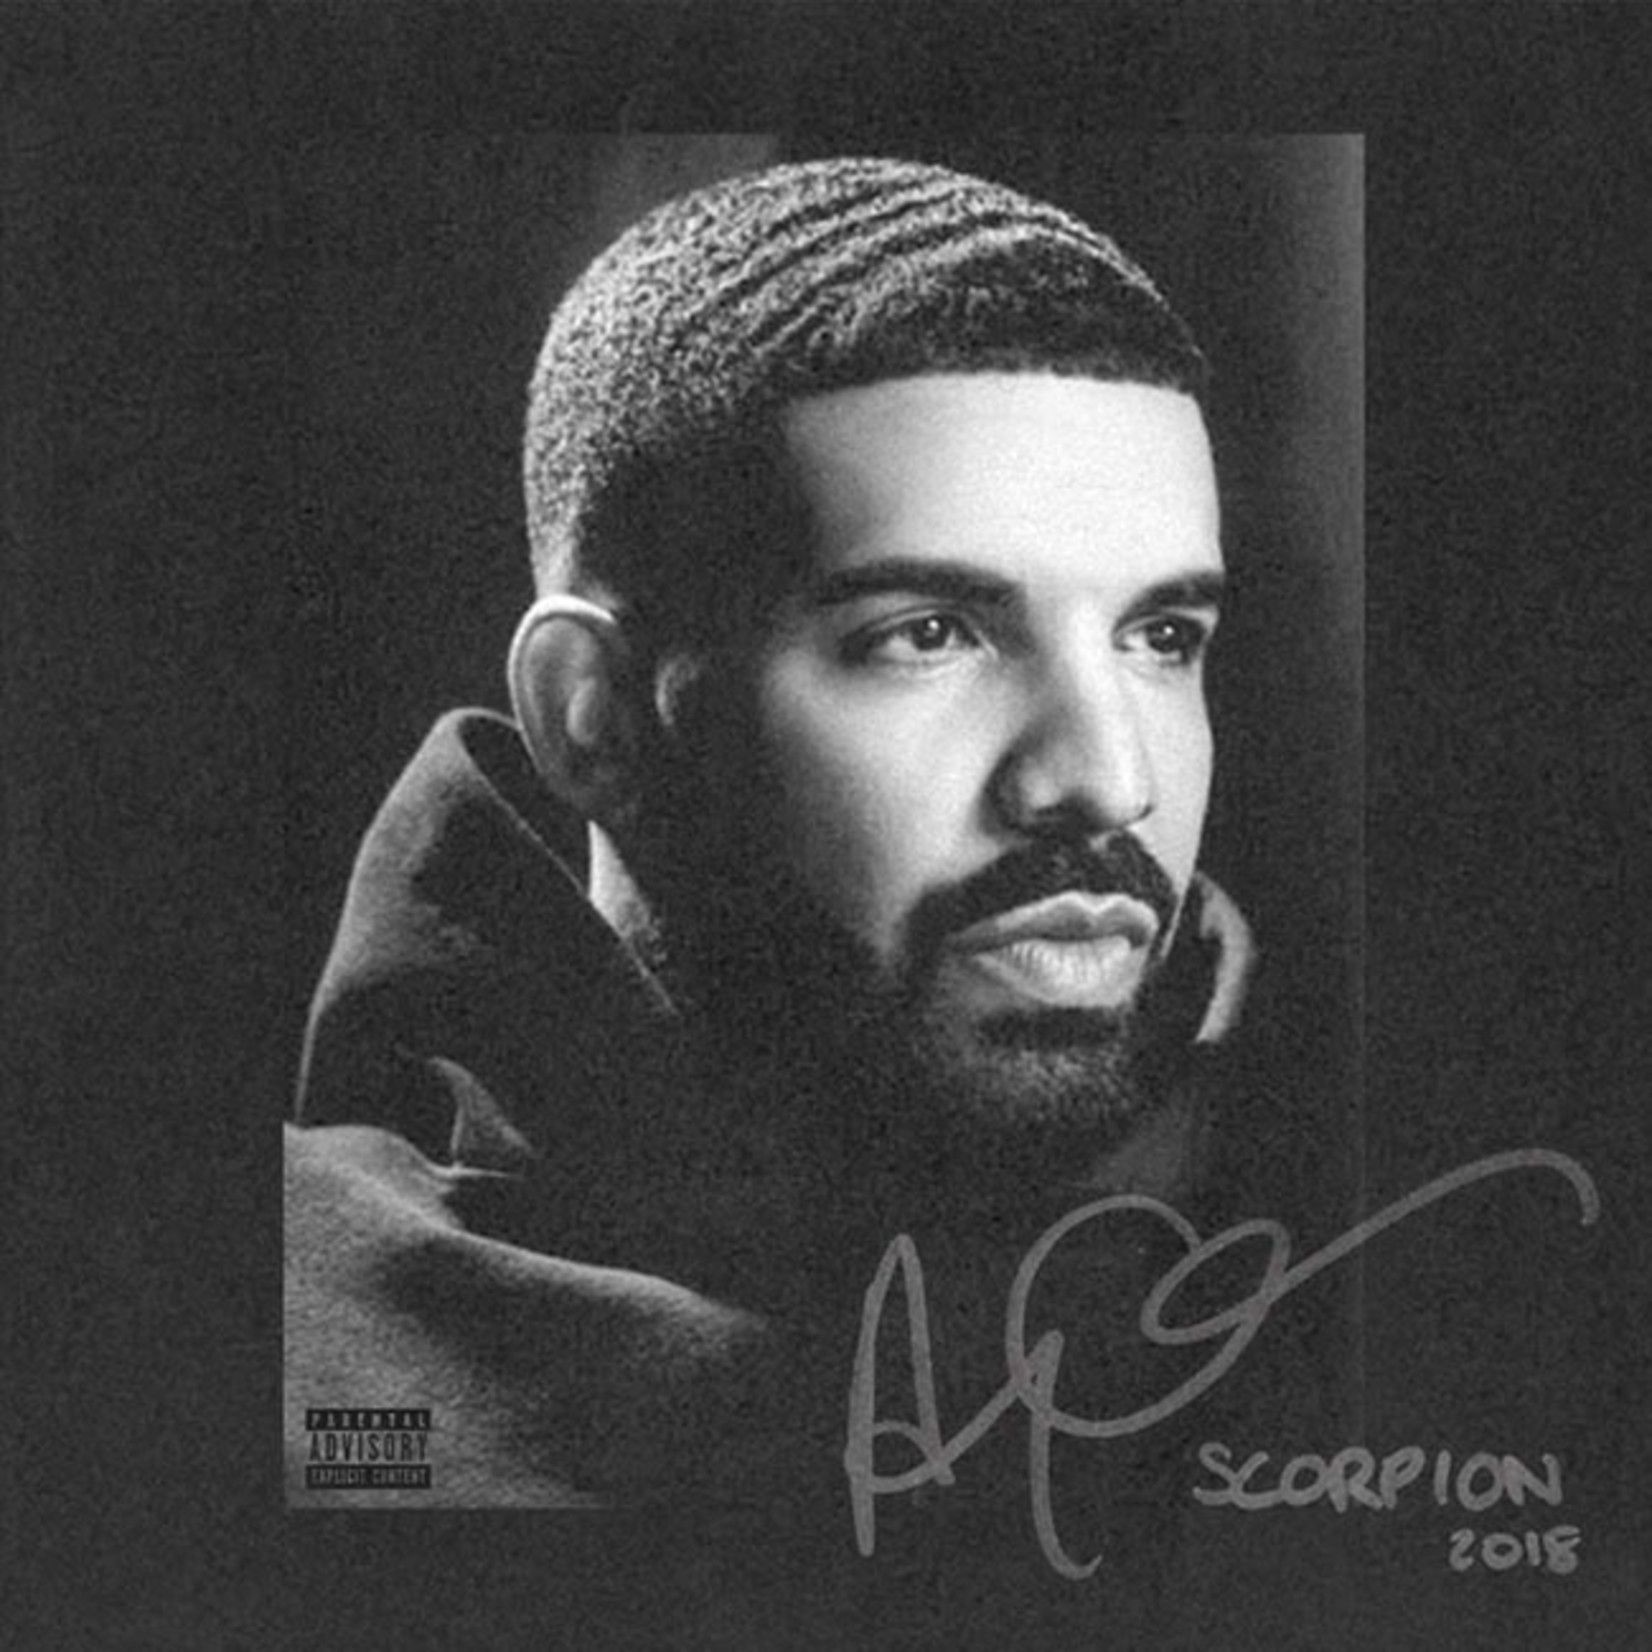 [New] Drake - Scorpion (2LP)